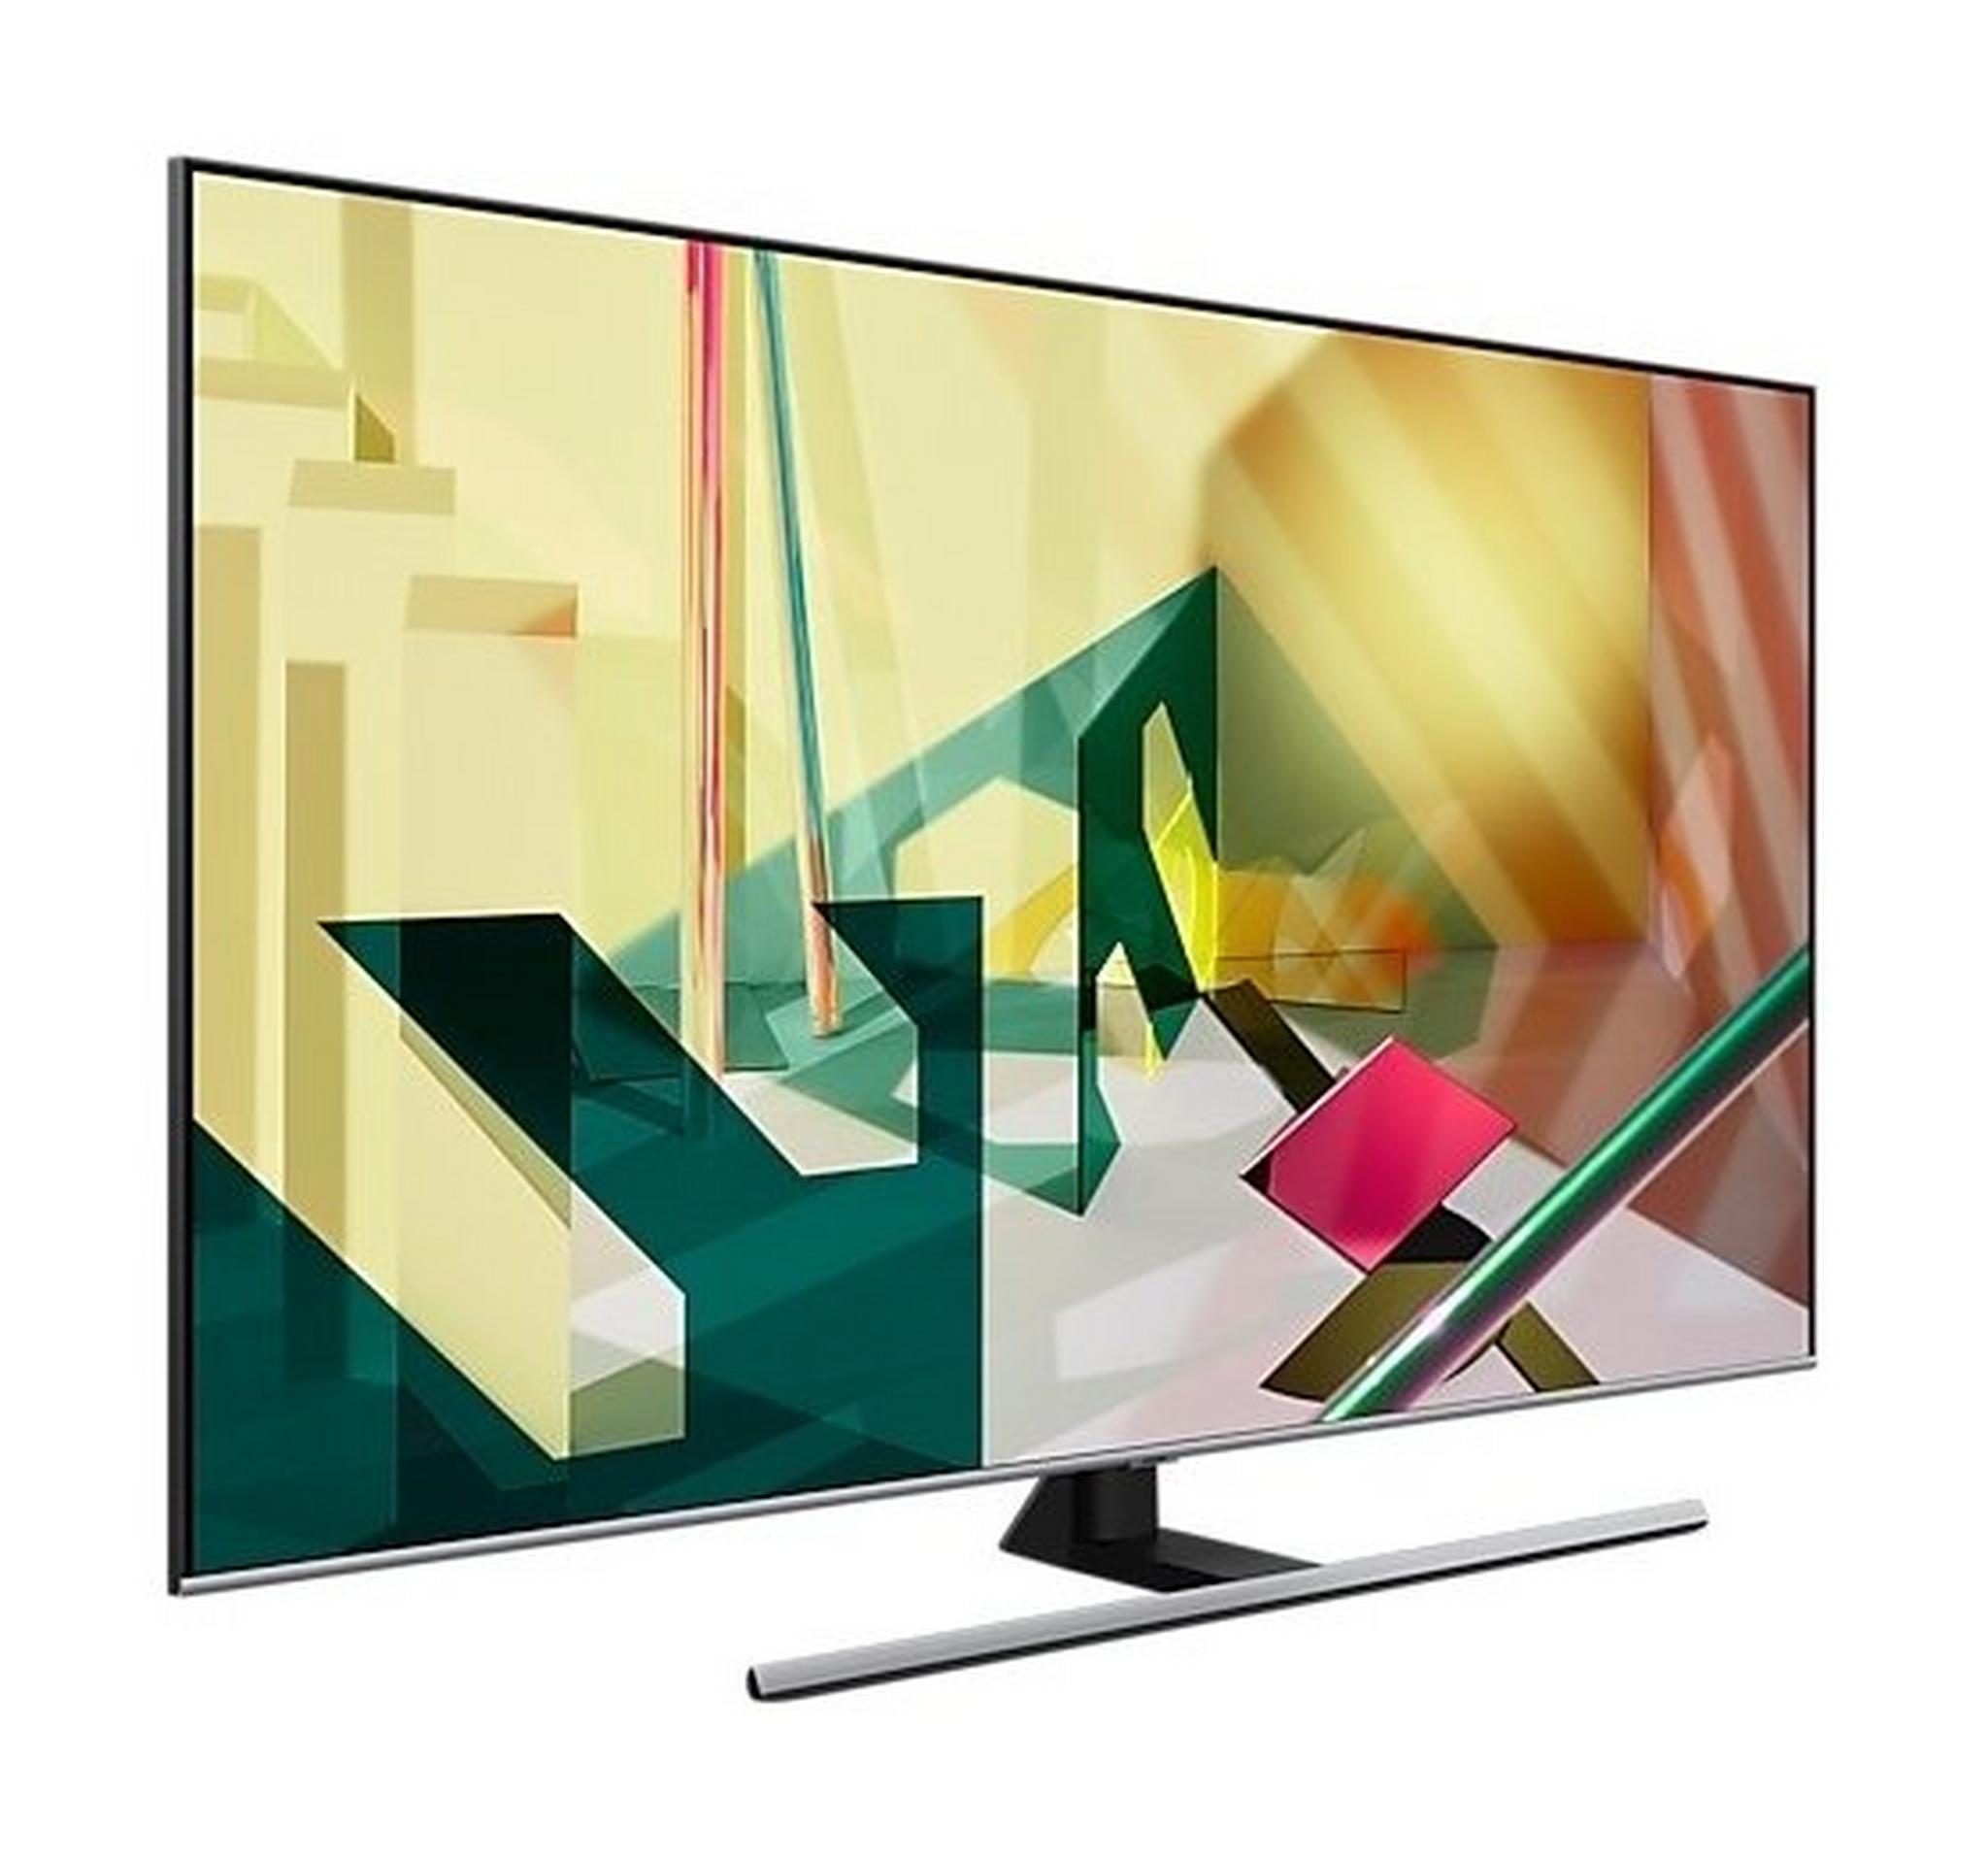 Samsung TV 75" QLED 4K Smart LED (2020) - QA75Q70T